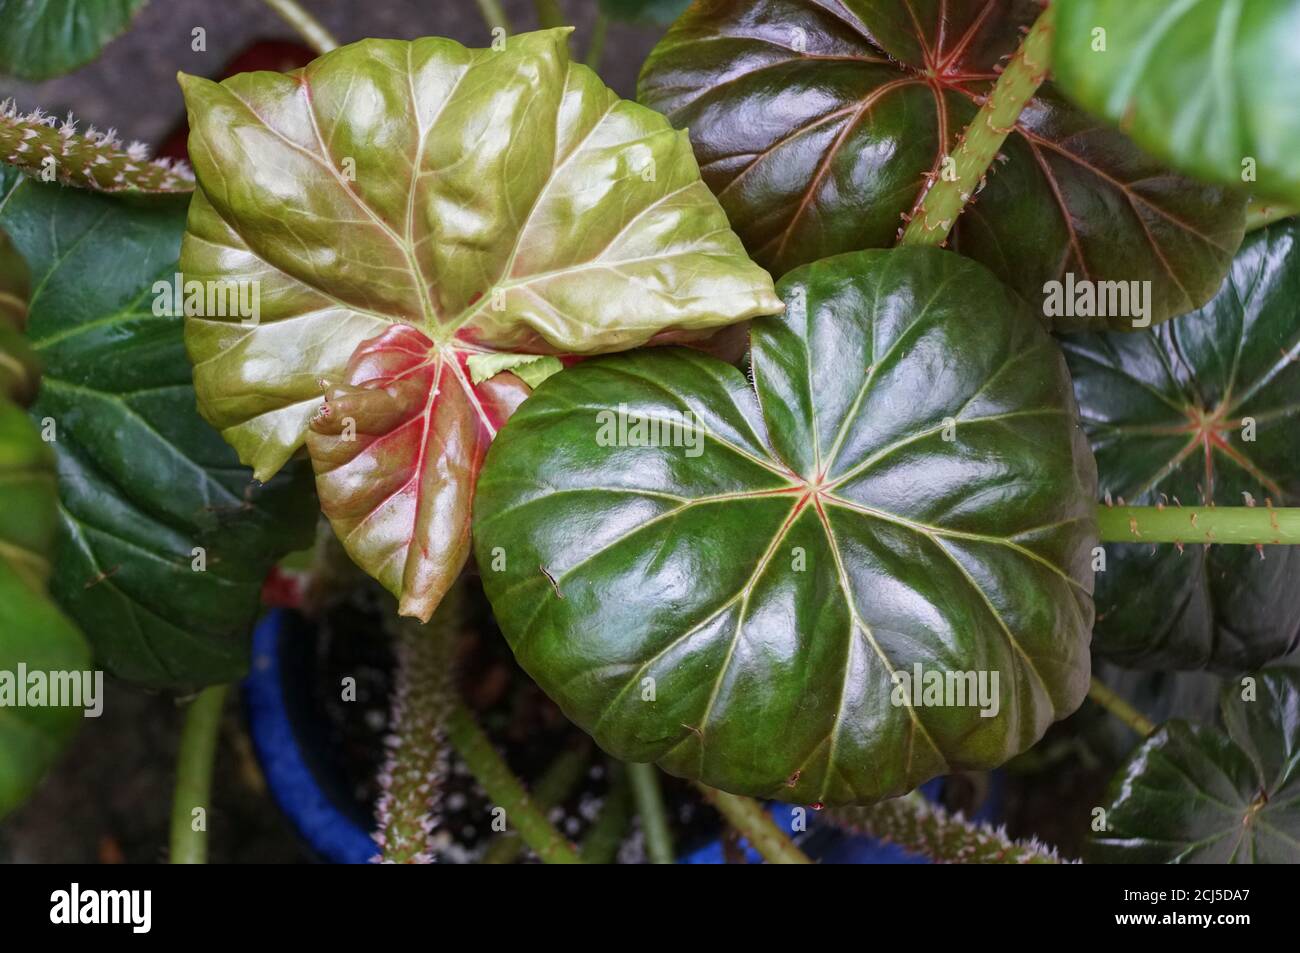 Shiny green leaves of Rhizomatous Begonia plant Stock Photo